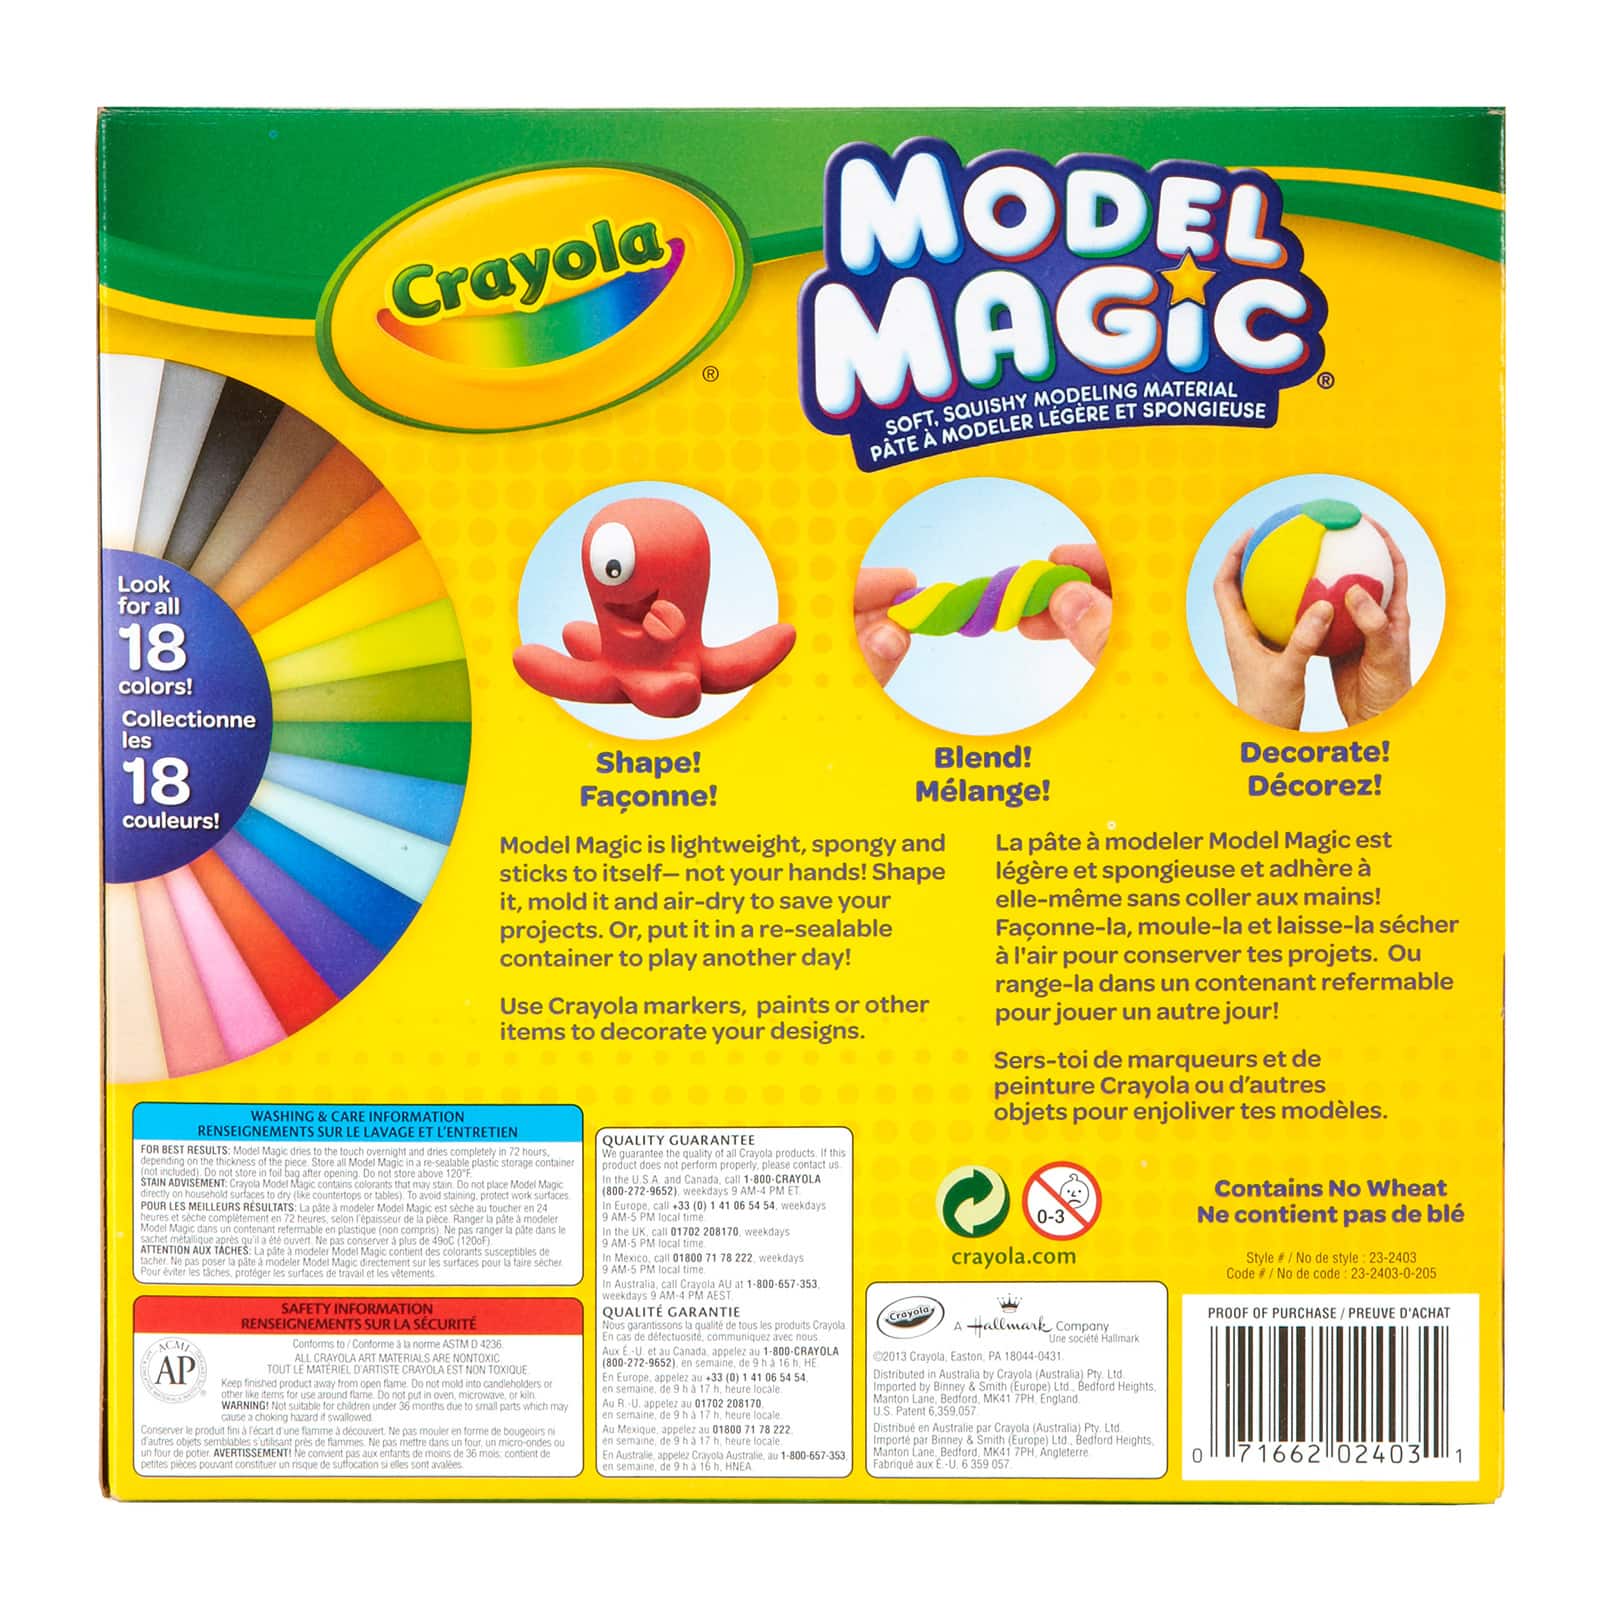 12 Packs: 14 ct. (168 total) Crayola&#xAE; Model Magic&#xAE; Deluxe Variety Pack